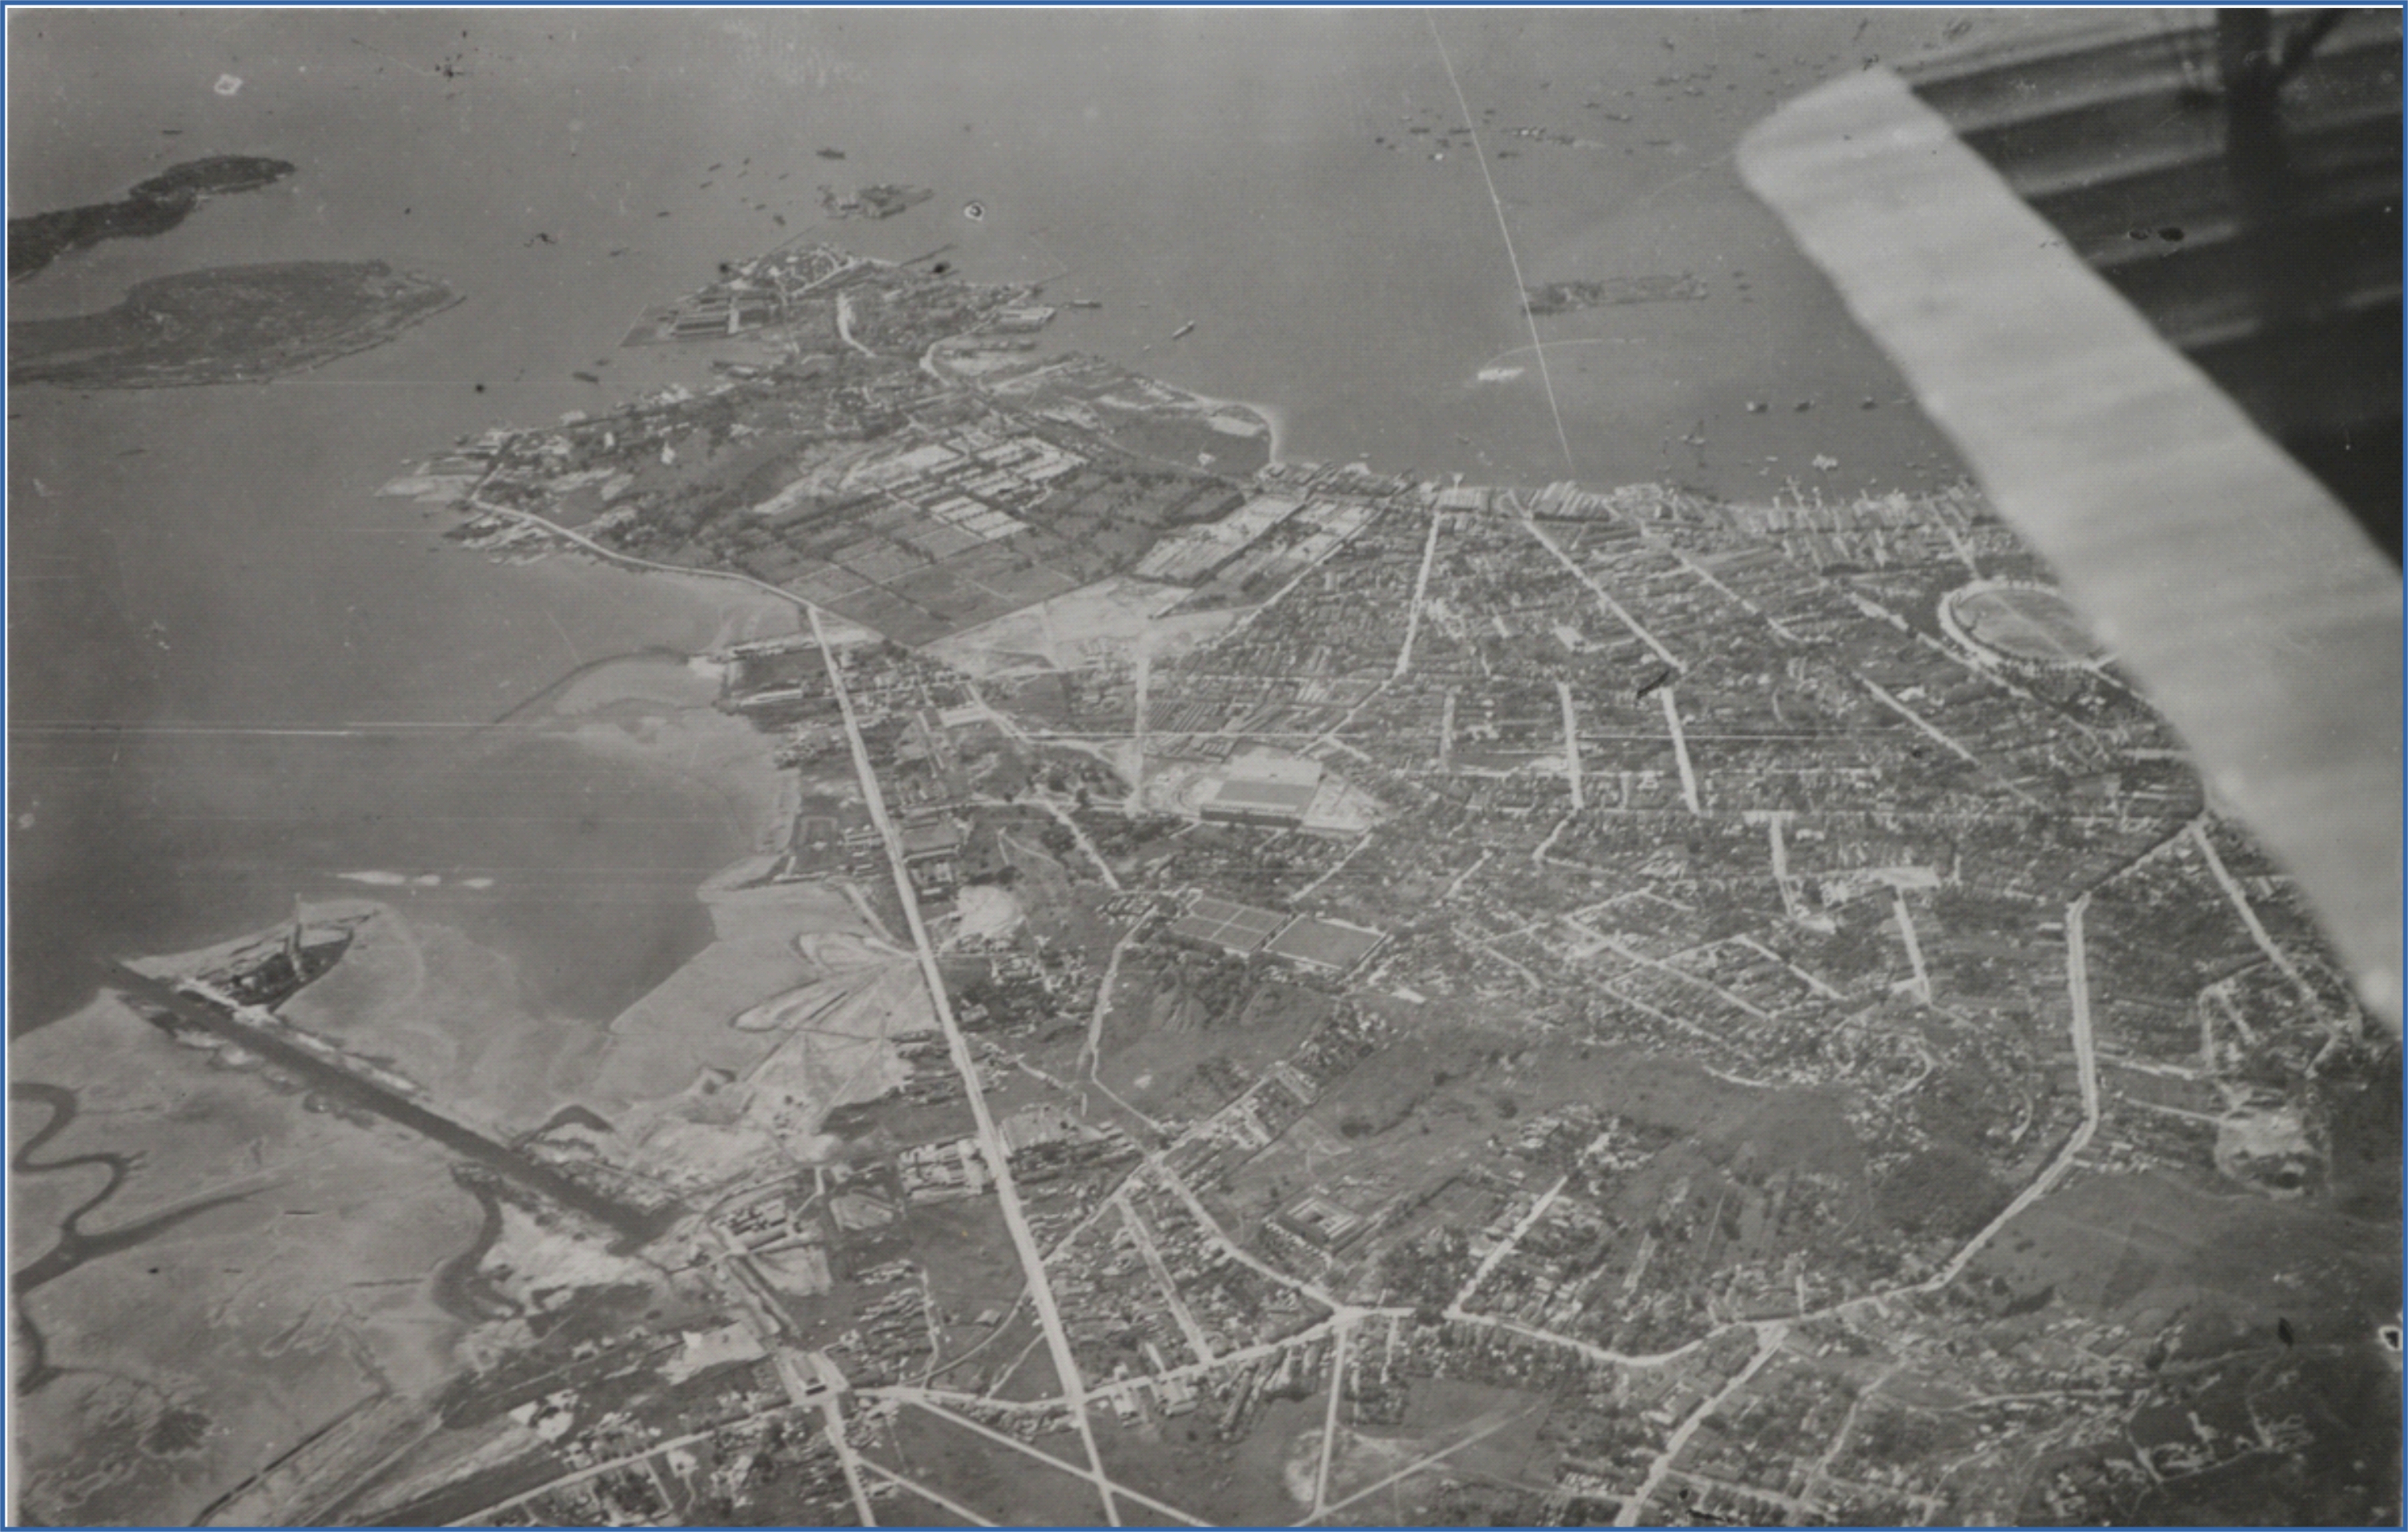 Foto durante o Voo Aerofotogramétrico - Inovação para a Cartografia no início do Século XX.